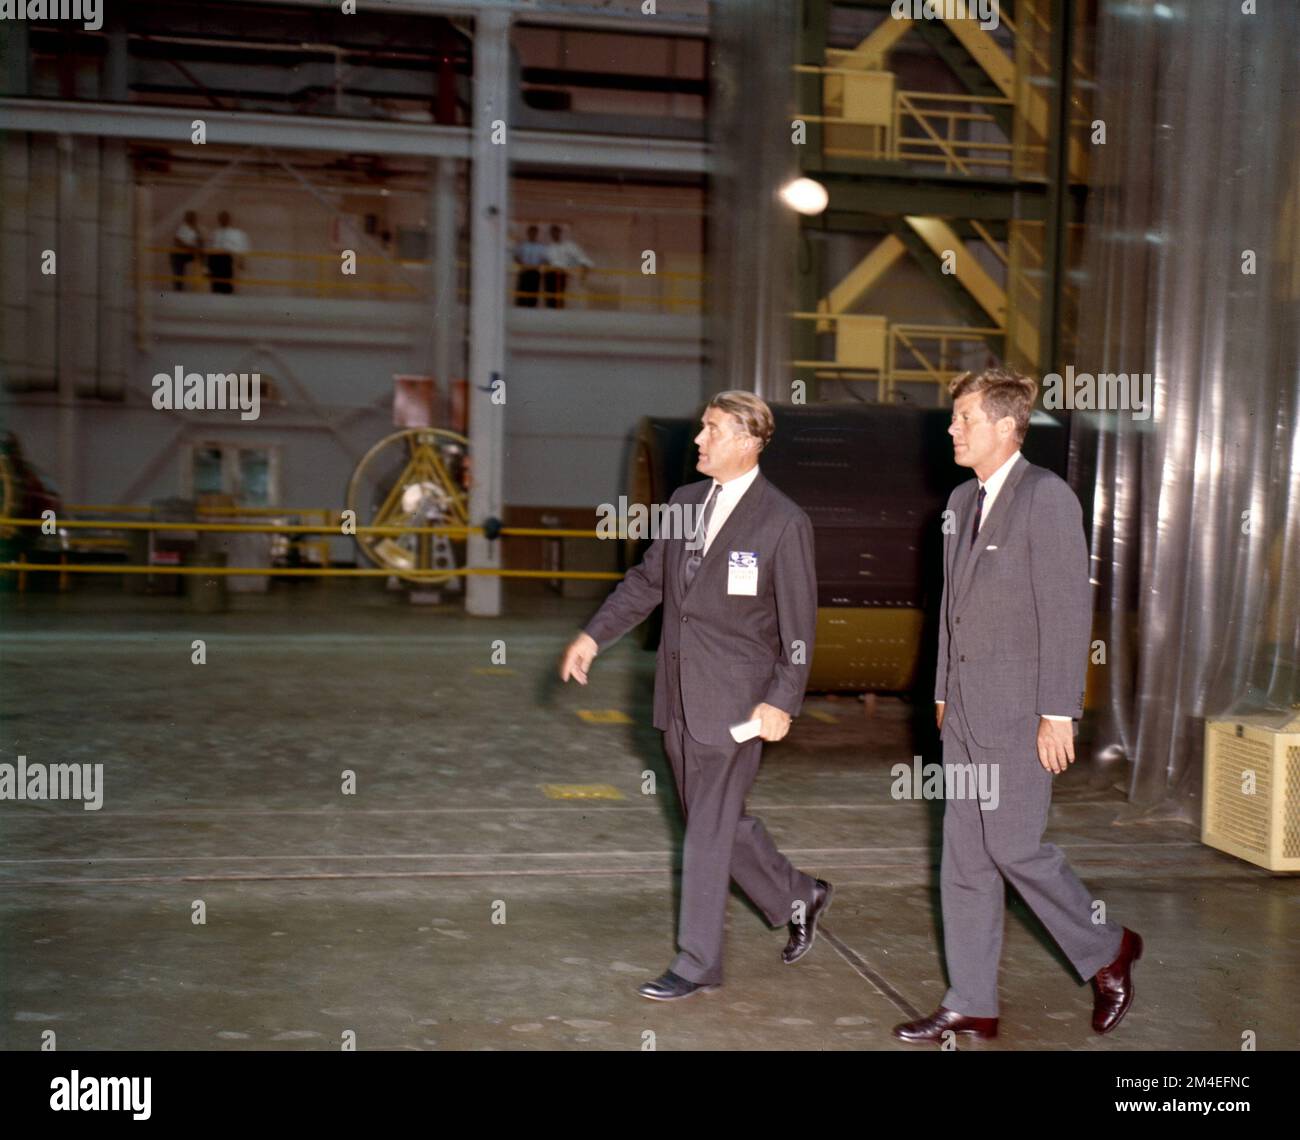 Le président John F Kennedy et Werner von Braun marchent ensemble dans un laboratoire de recherche sur l'exploration spatiale pendant la course à l'espace. Banque D'Images